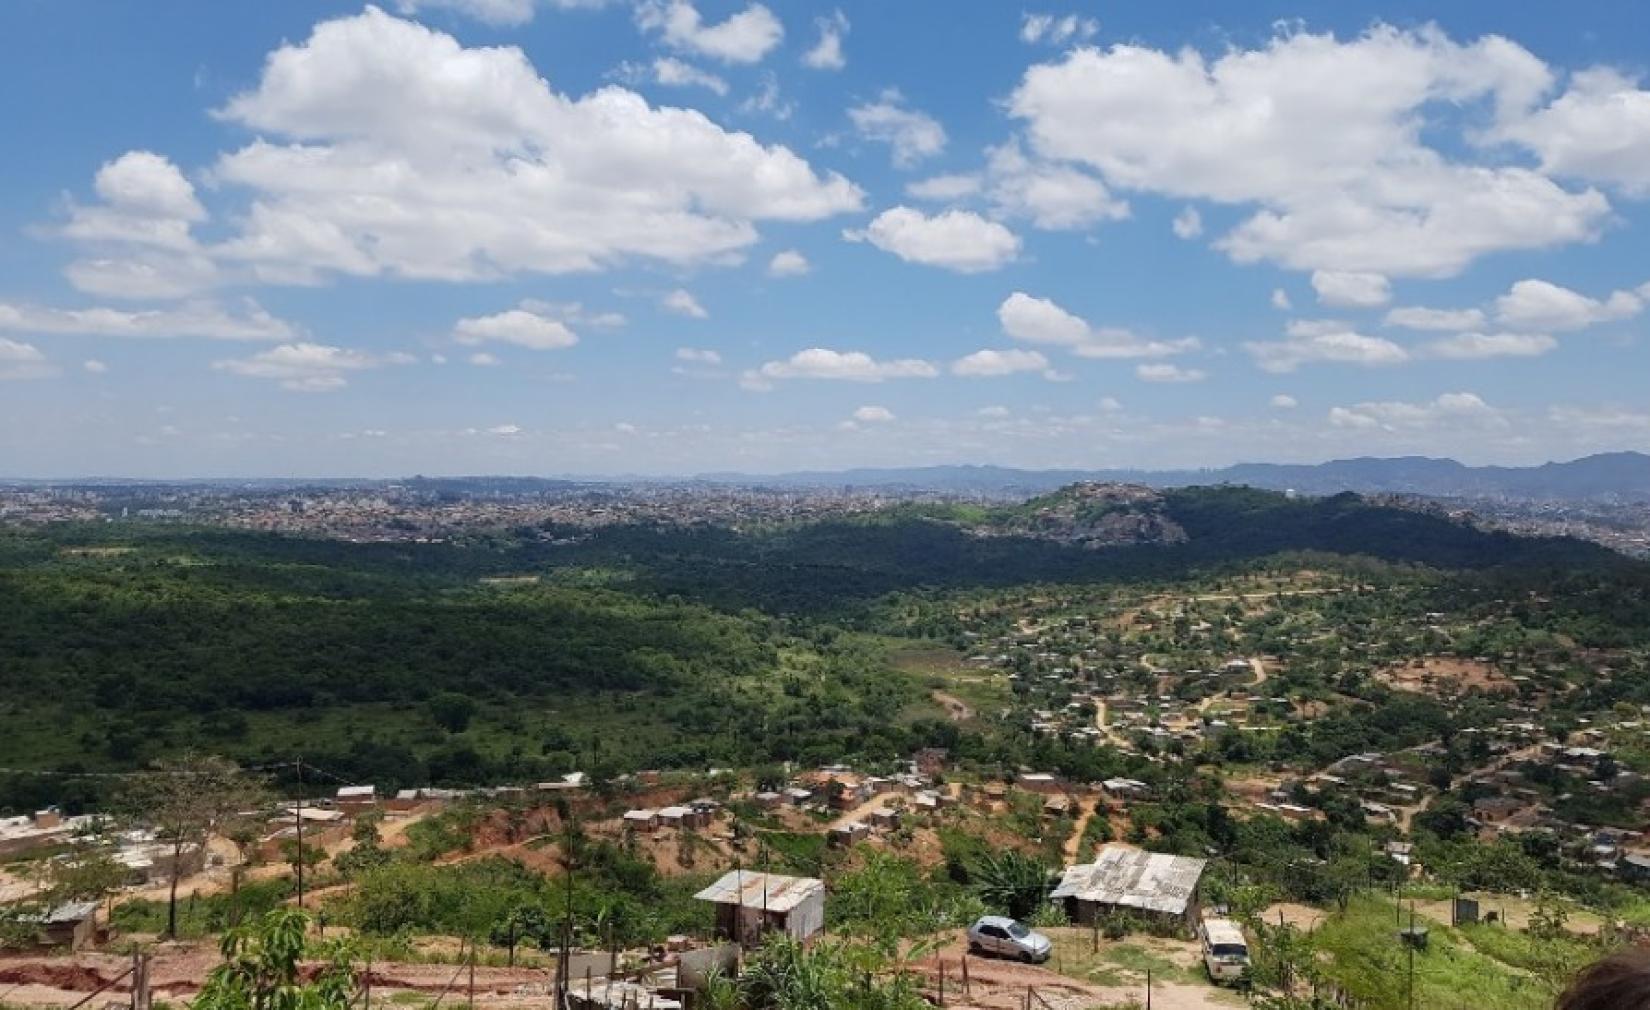 Foto aérea de Izidora, última porção de território não parcelado da capital mineira, localizada em uma área de grande relevância ambiental.